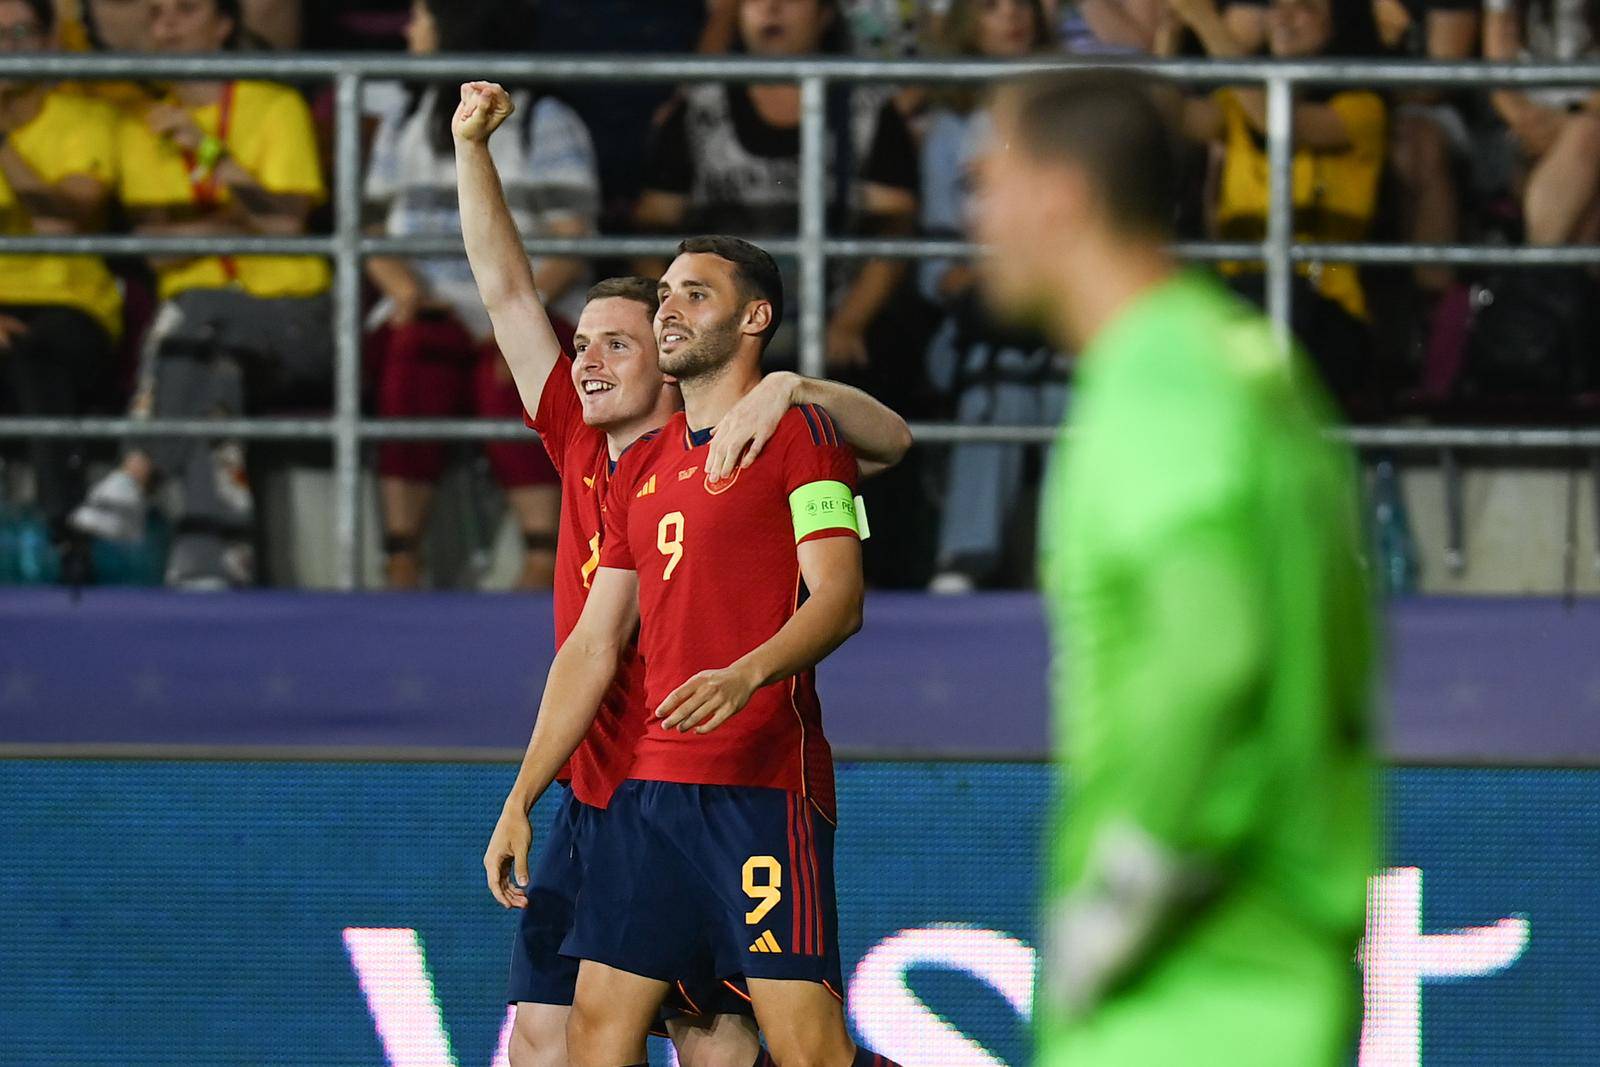 Hrvatska U-21 reprezentacija protiv Španjolske igra drugu utakmicu na Europskom prvenstvu za mlade